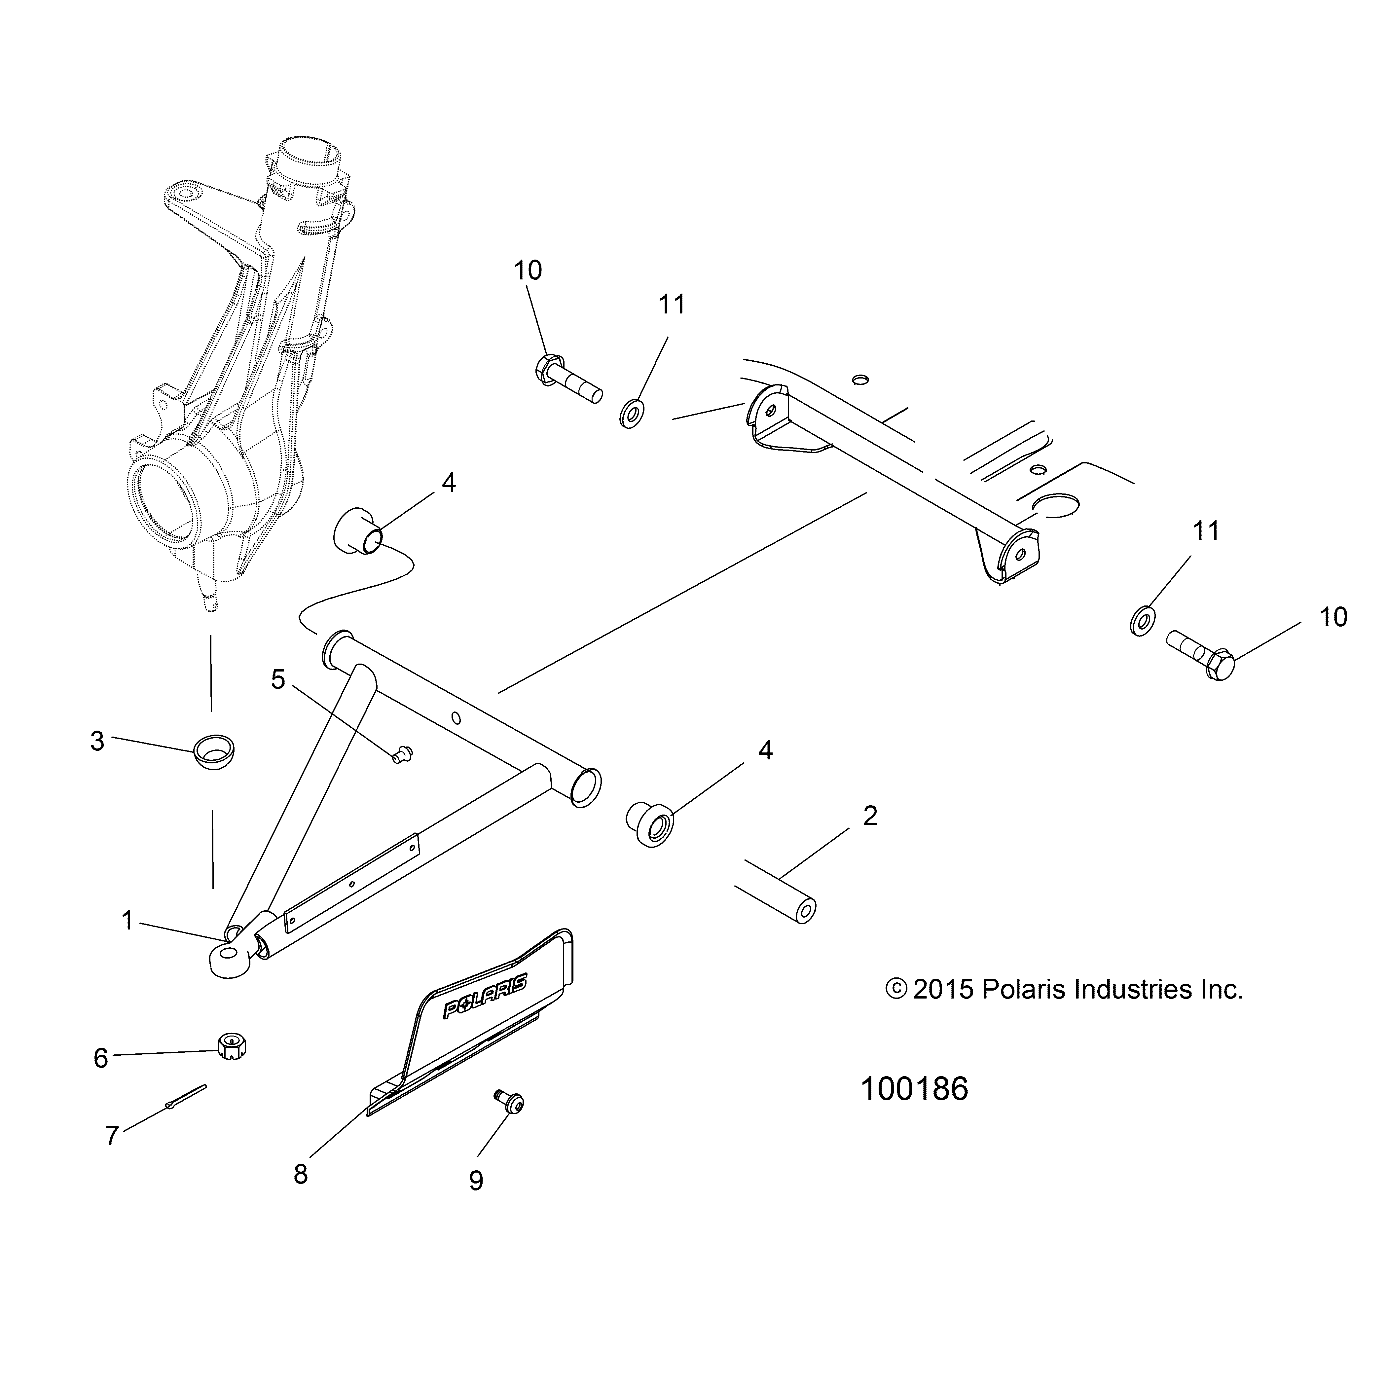 Foto diagrama Polaris que contem a peça 5414893